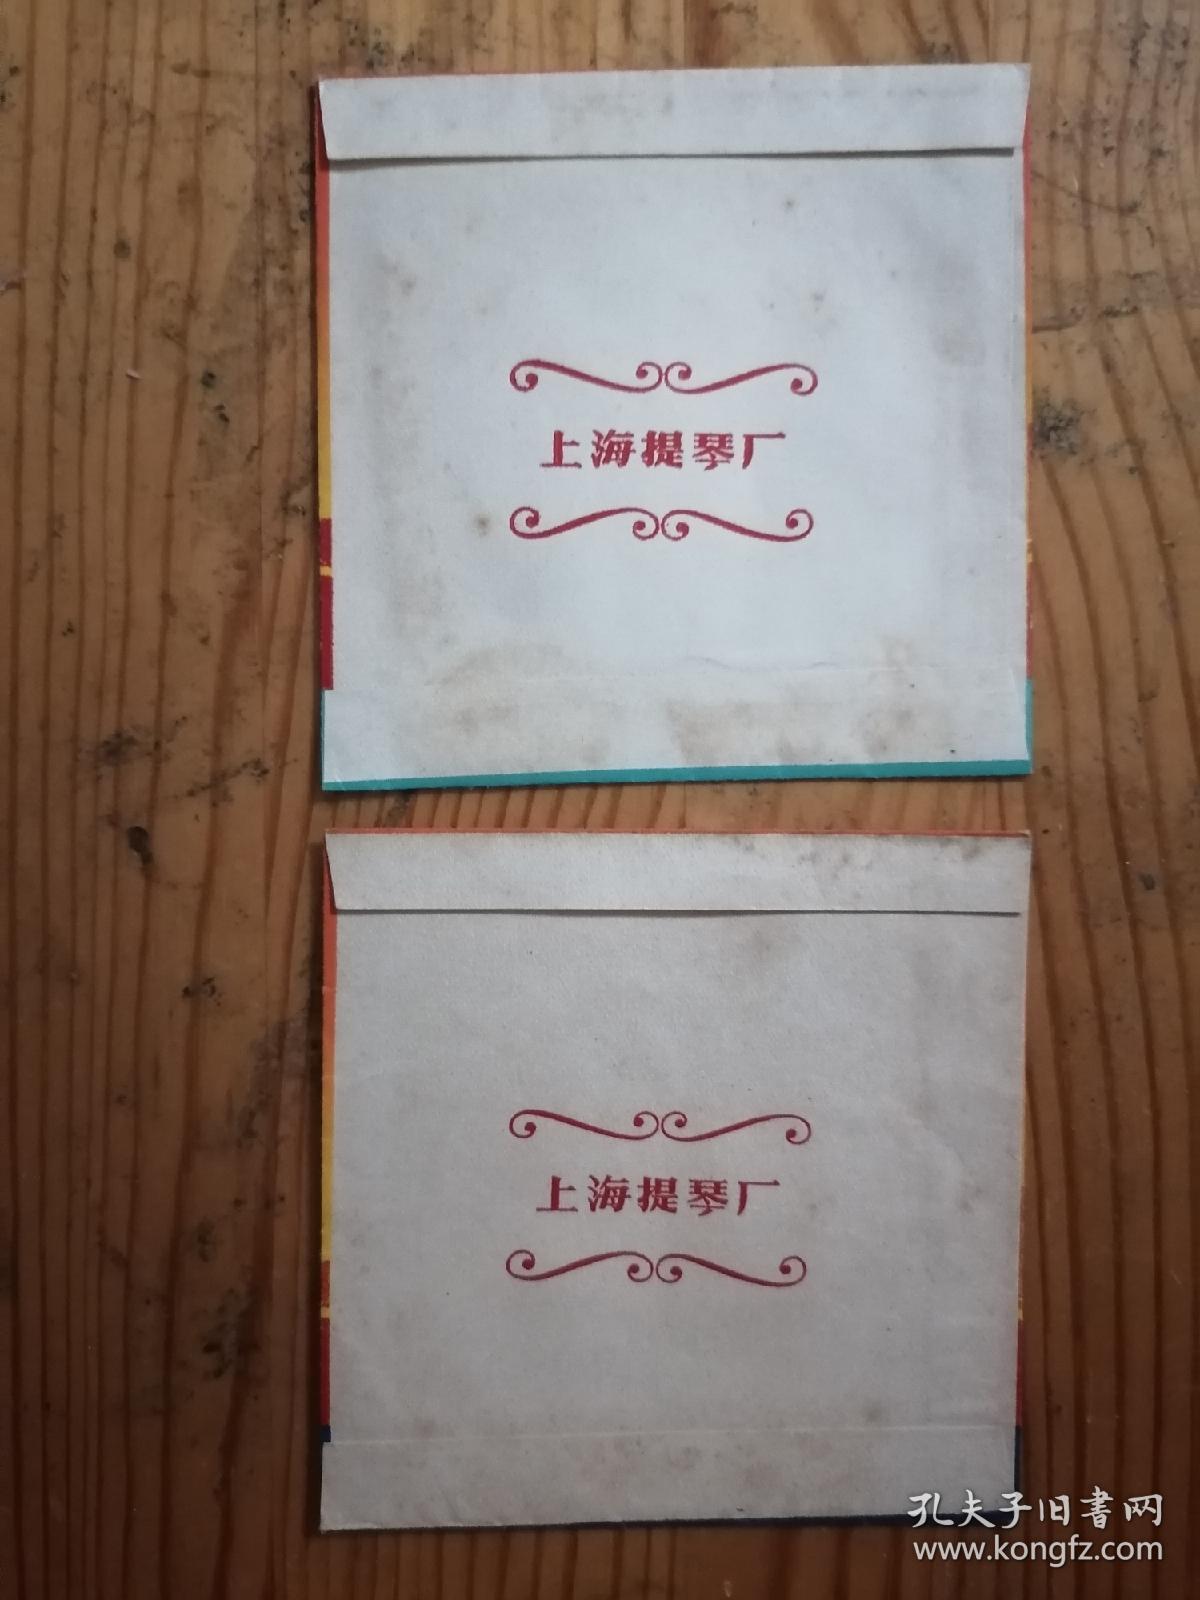 上海牌琴弦商标不同语录2种合售